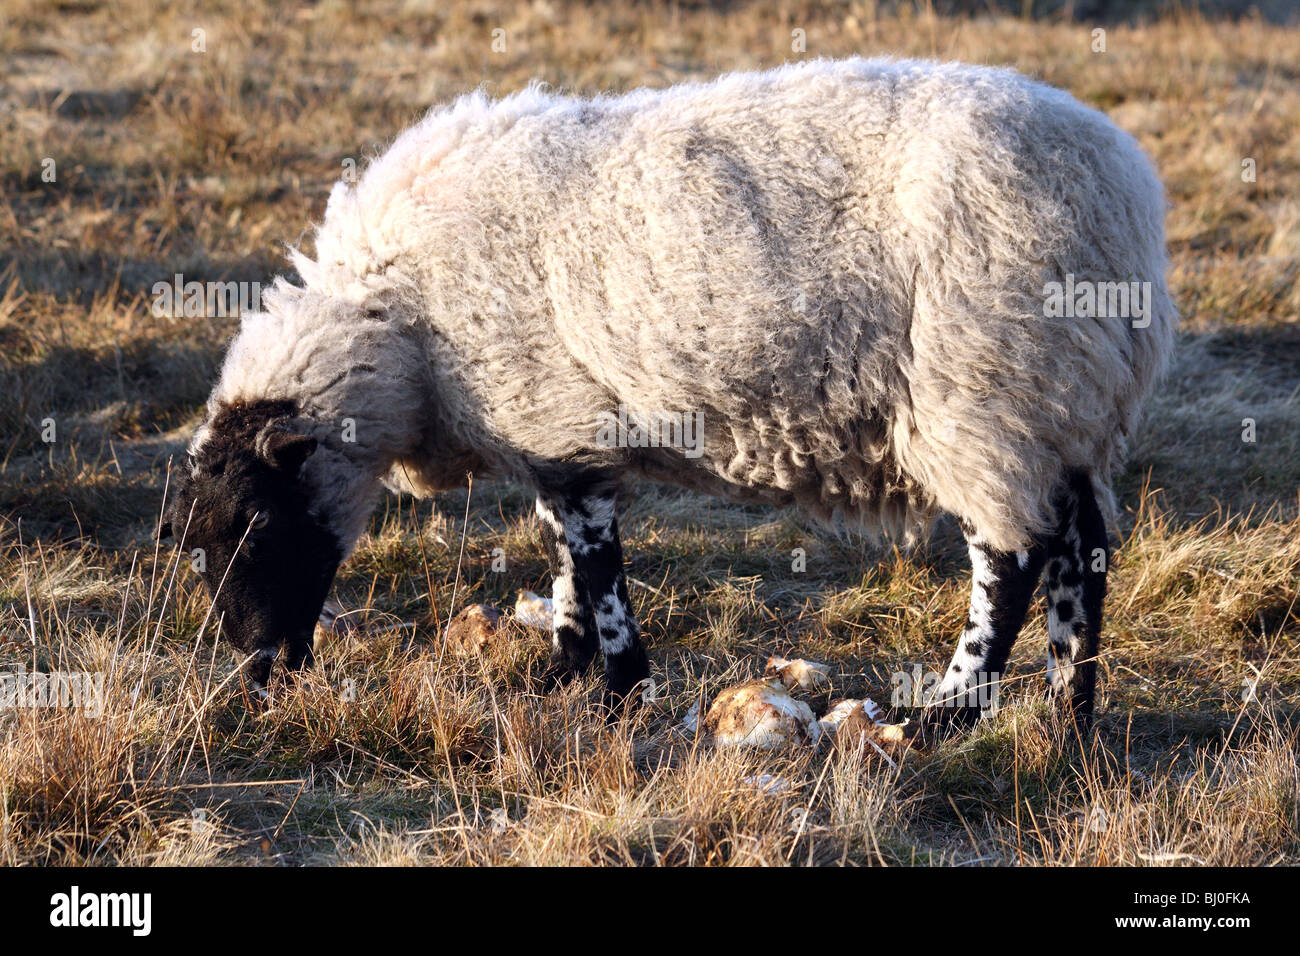 Razze ovine Derbyshire Gritstone pecore un domestico animale da azienda che di solito è interrogata Foto Stock